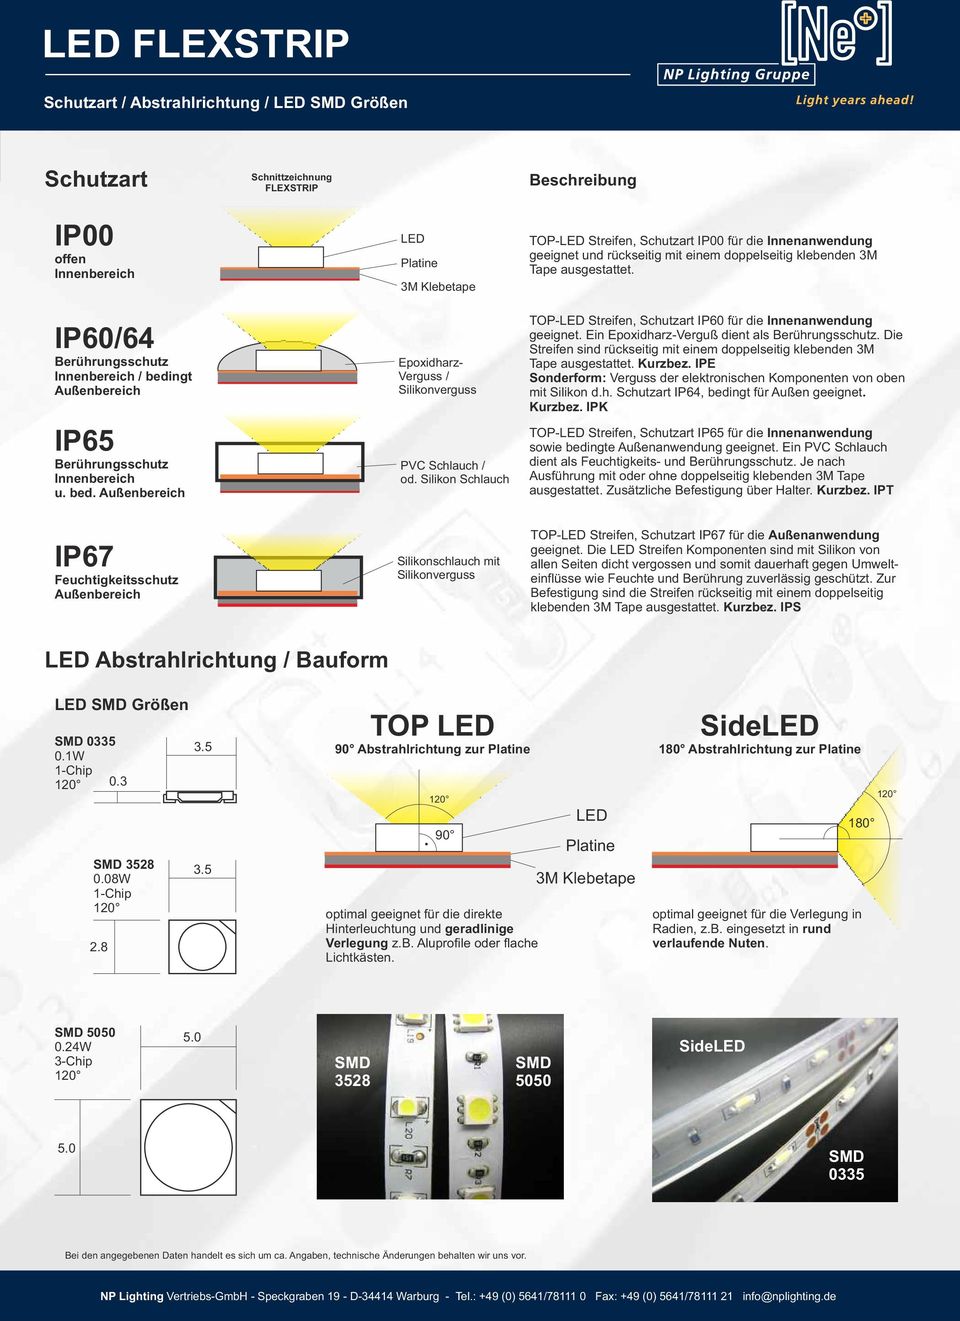 Silikon Schlauch TOP- Streifen, Schutzart IP00 für die Innenanwendung geeignet und rückseitig mit einem doppelseitig klebenden 3M Tape ausgestattet.